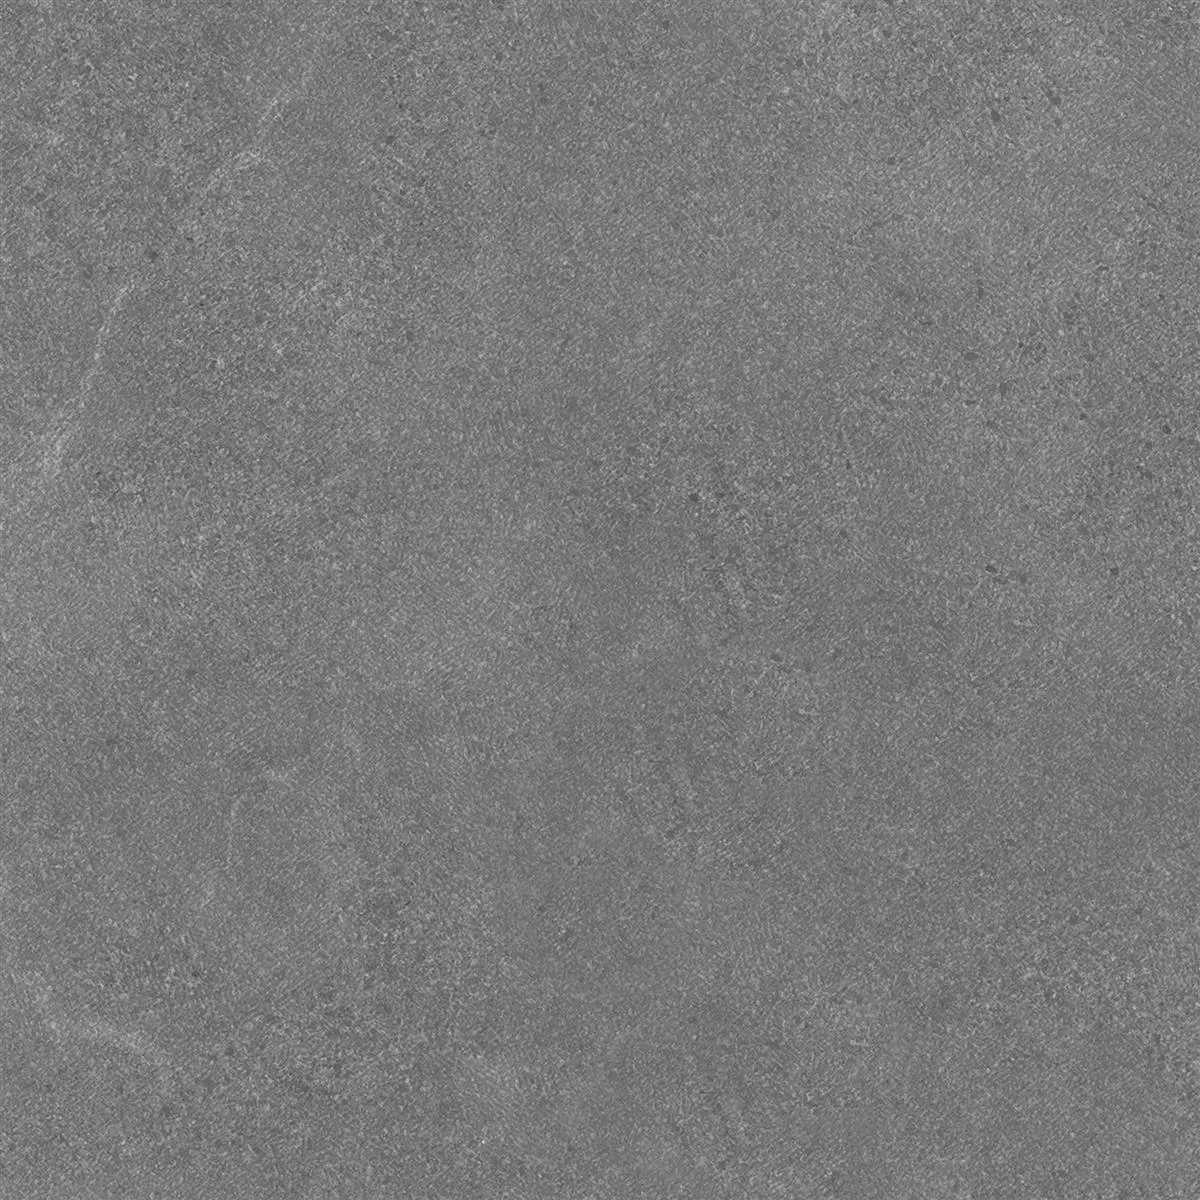 Πρότυπο Πλακάκια Δαπέδου Galilea Άγυαλο R10B Ανθρακίτης 60x60cm